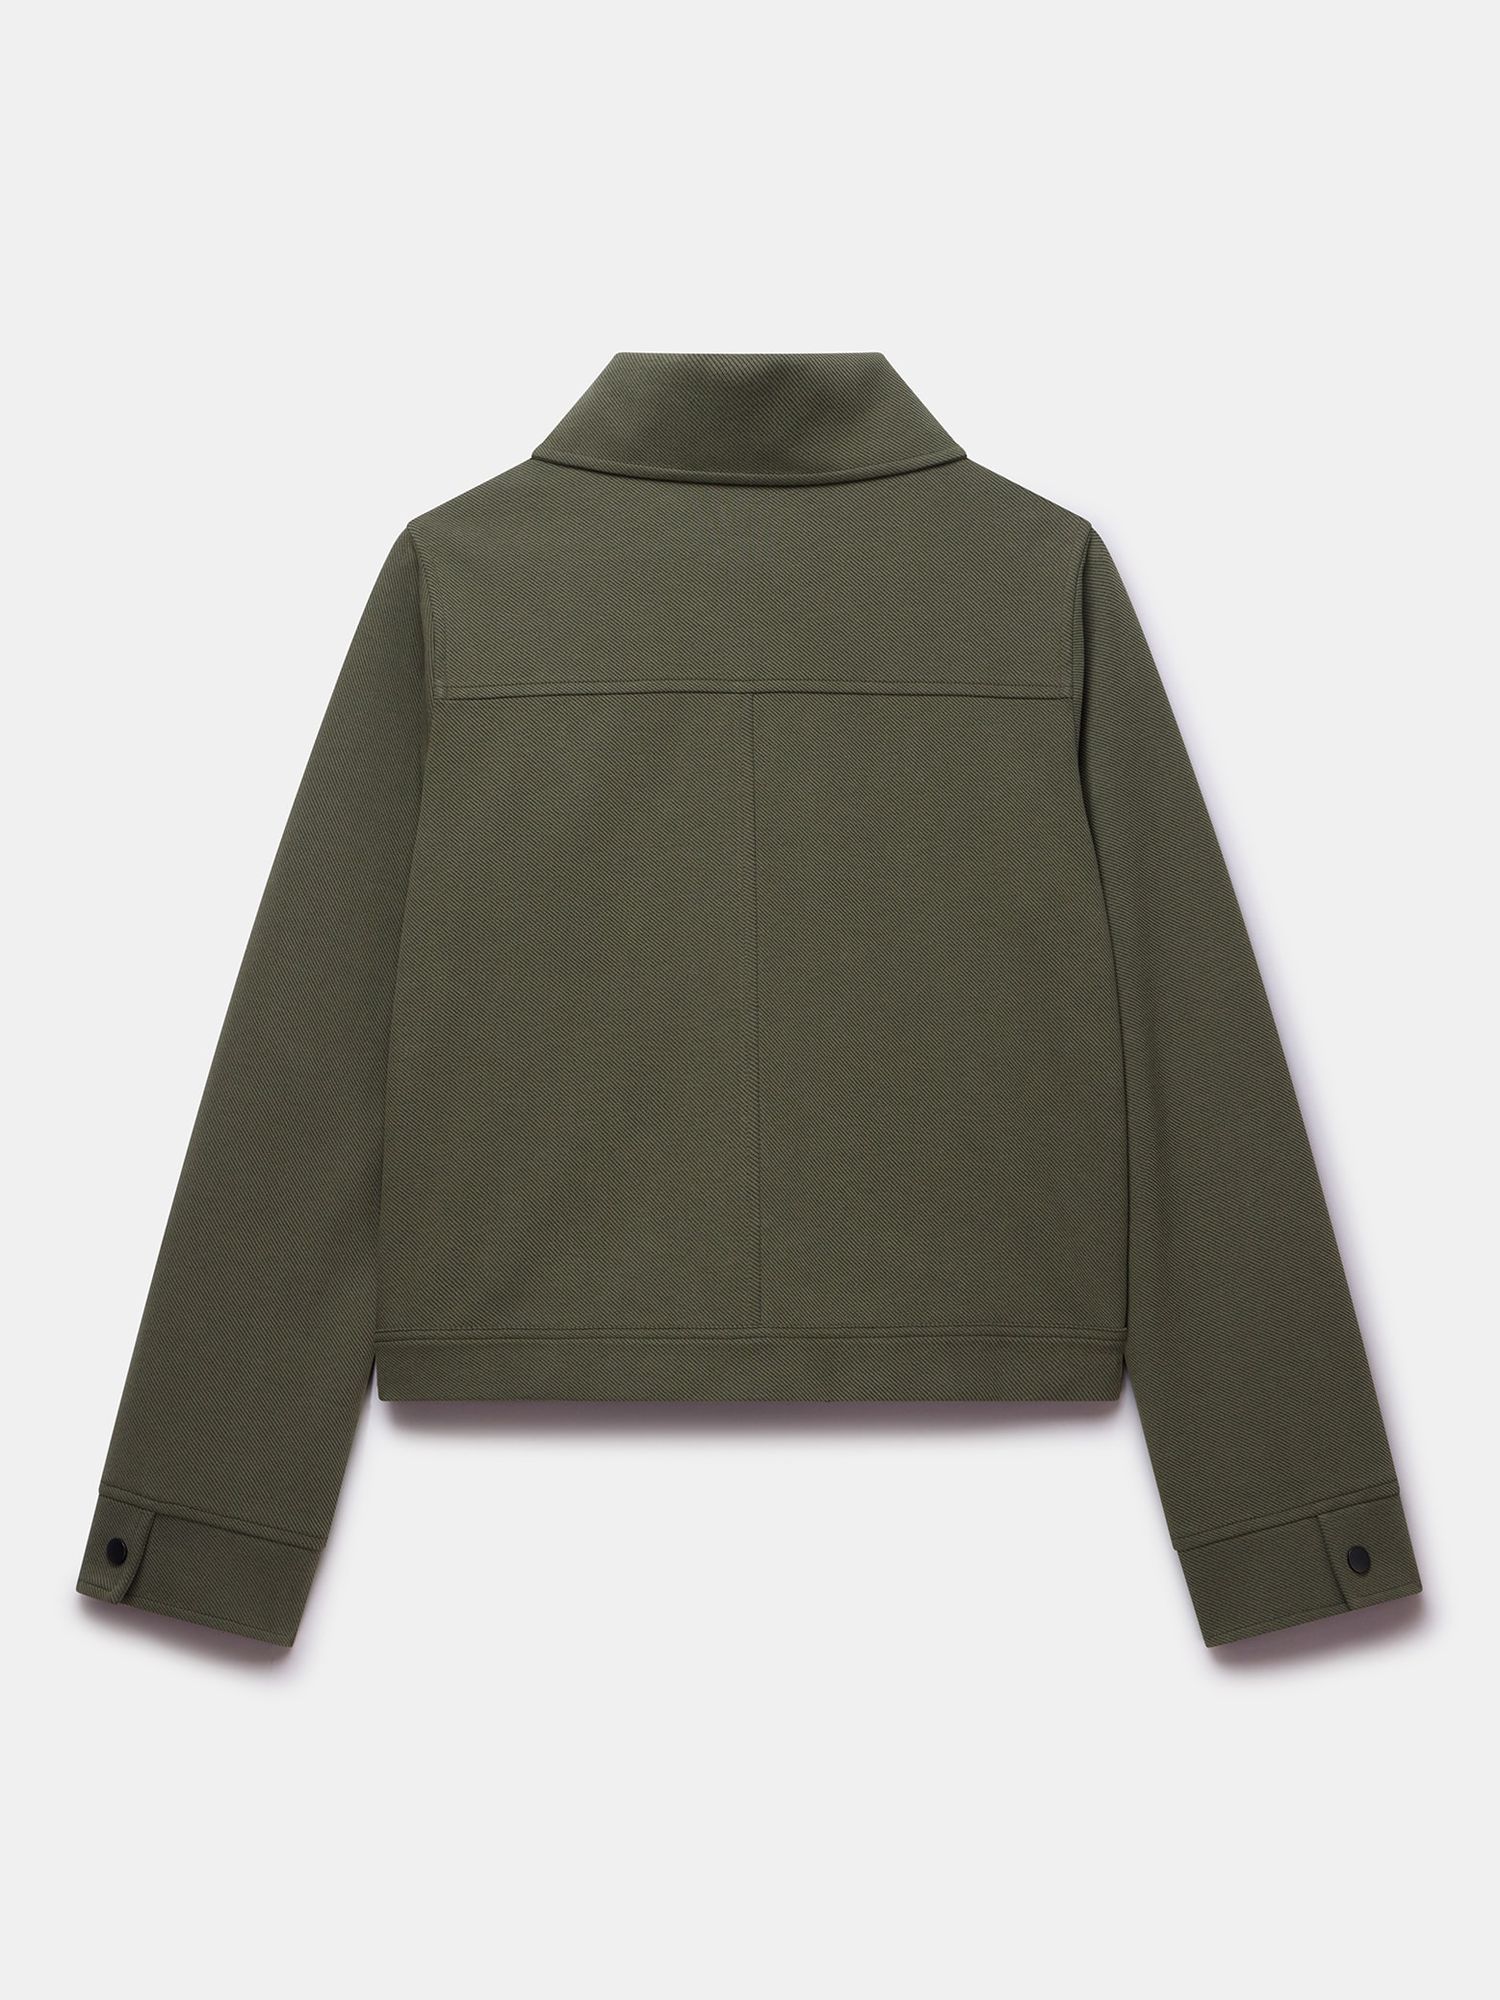 Mint Velvet Open Collar Jacket, Green, S